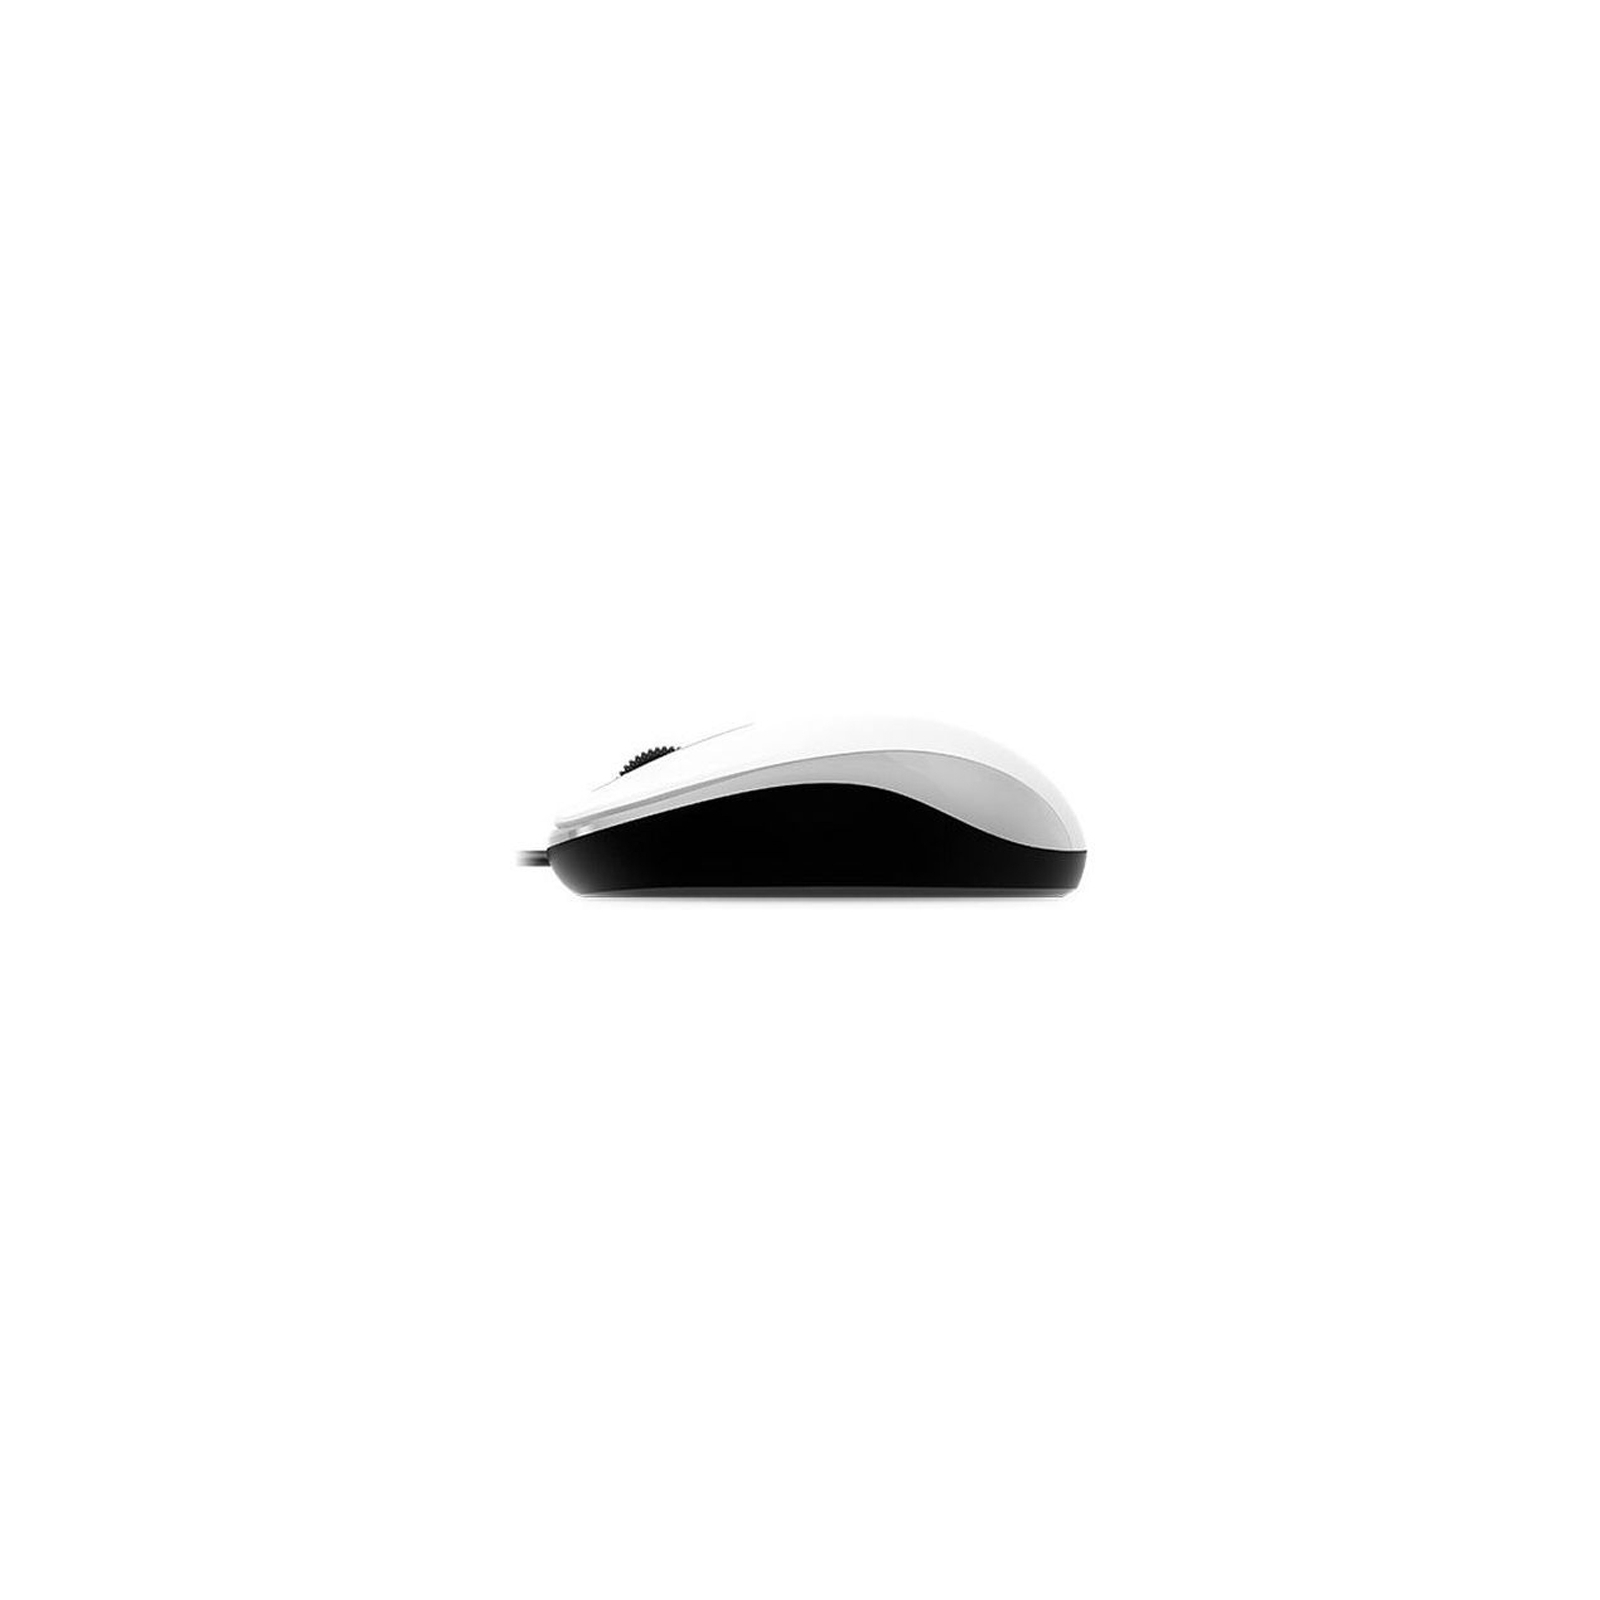 Мышка Genius DX-110 USB Green (31010116105) изображение 3